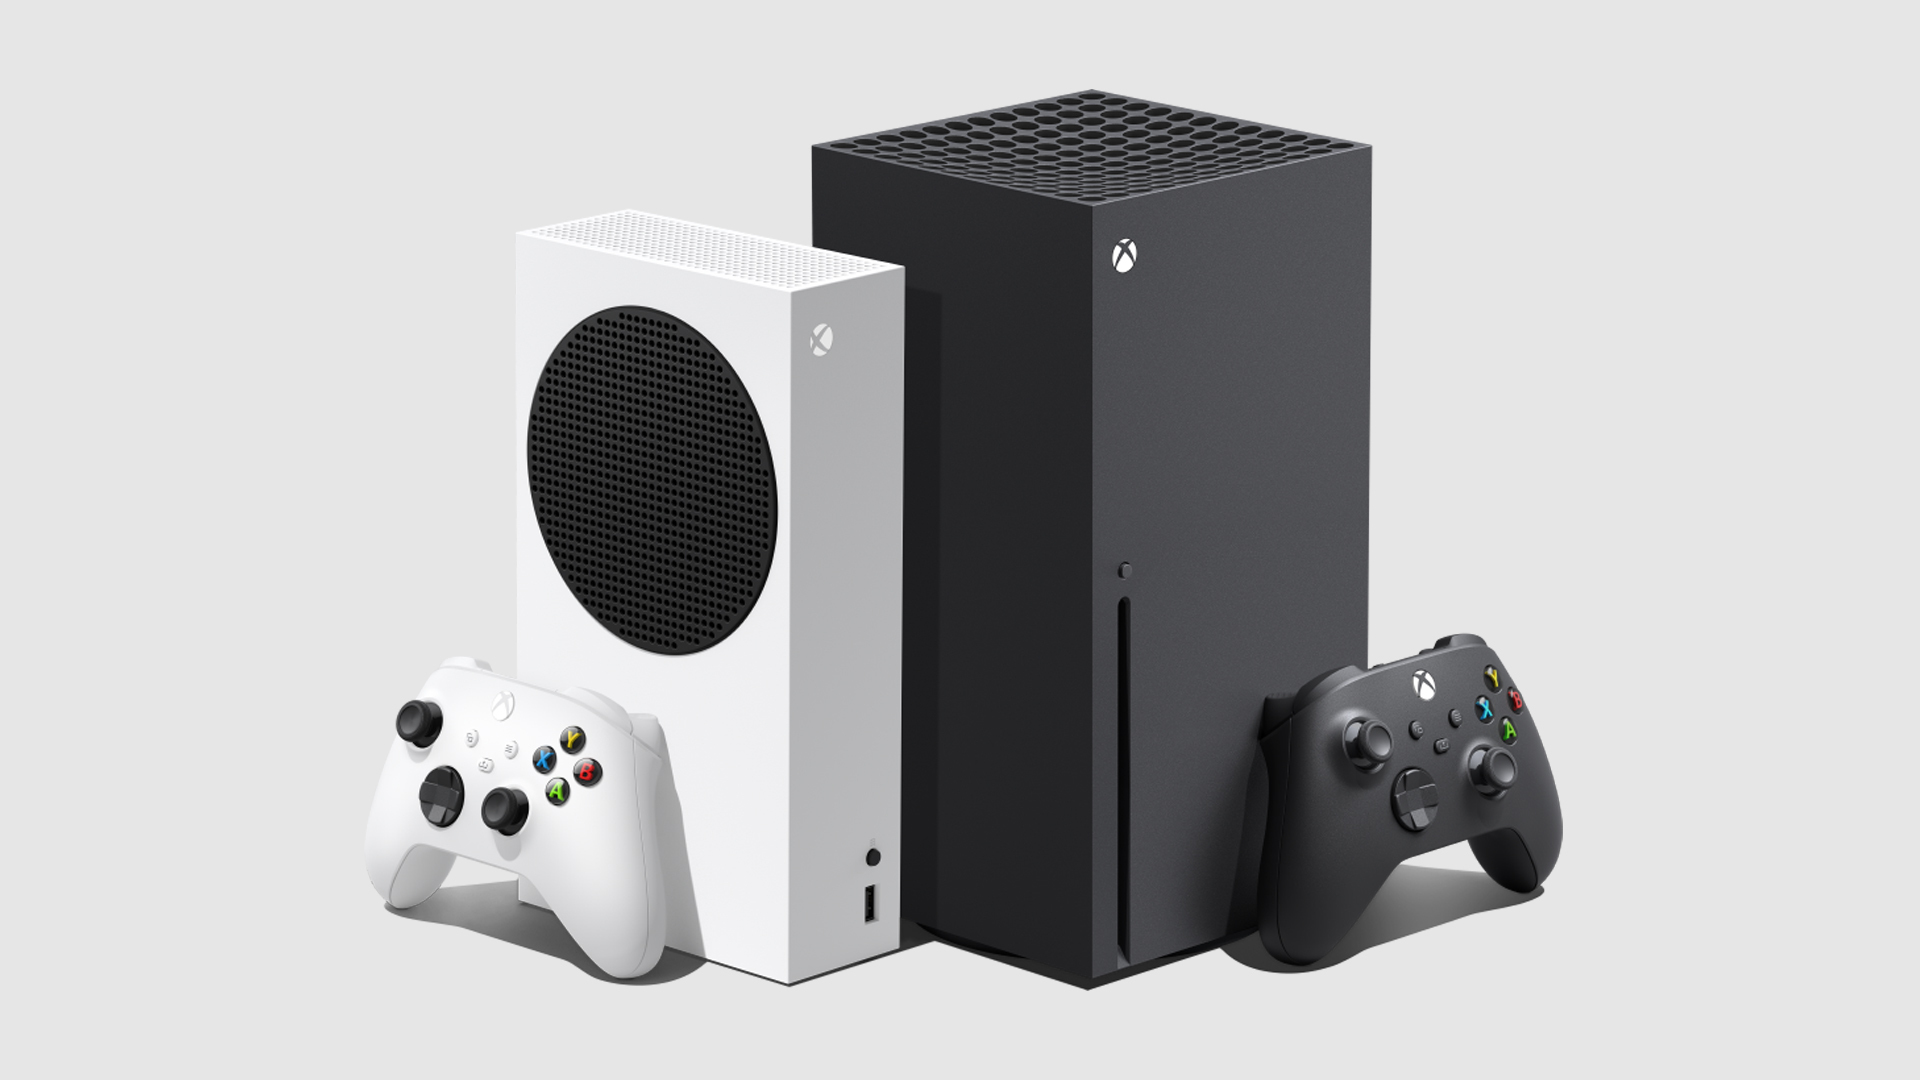 Gerücht: Neues Xbox Development Kit wurde für den Einsatz in Südkorea geprüft